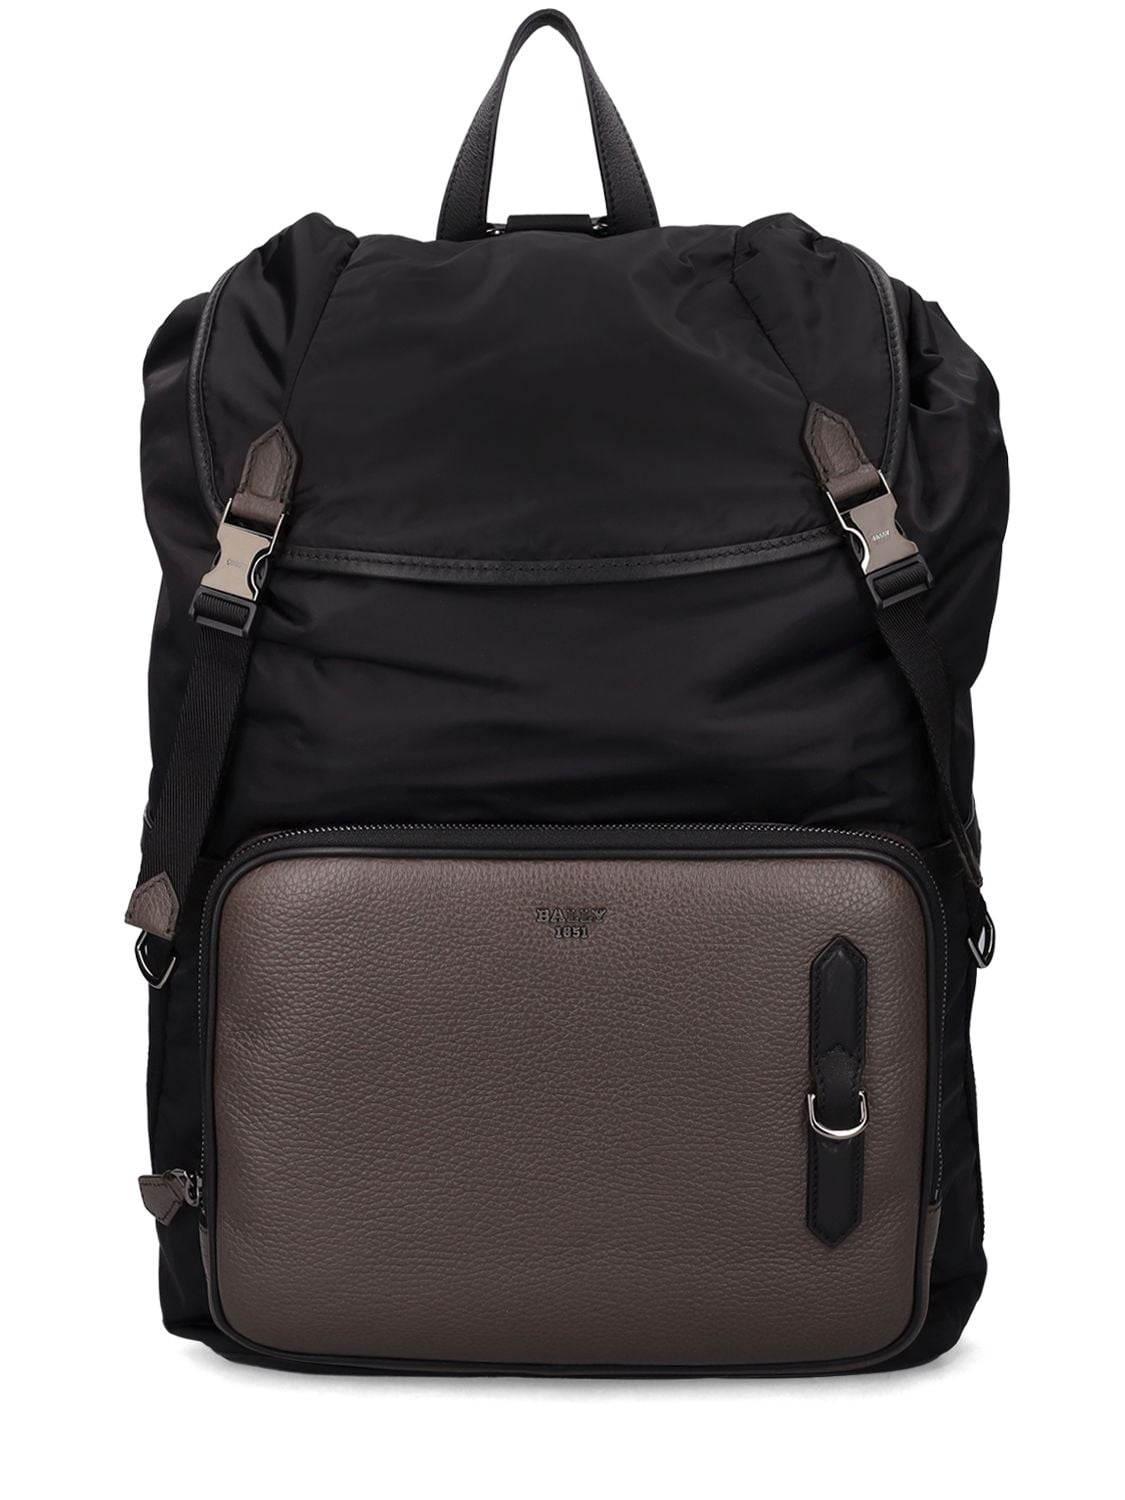 Bergmann Nylon & Leather Backpack